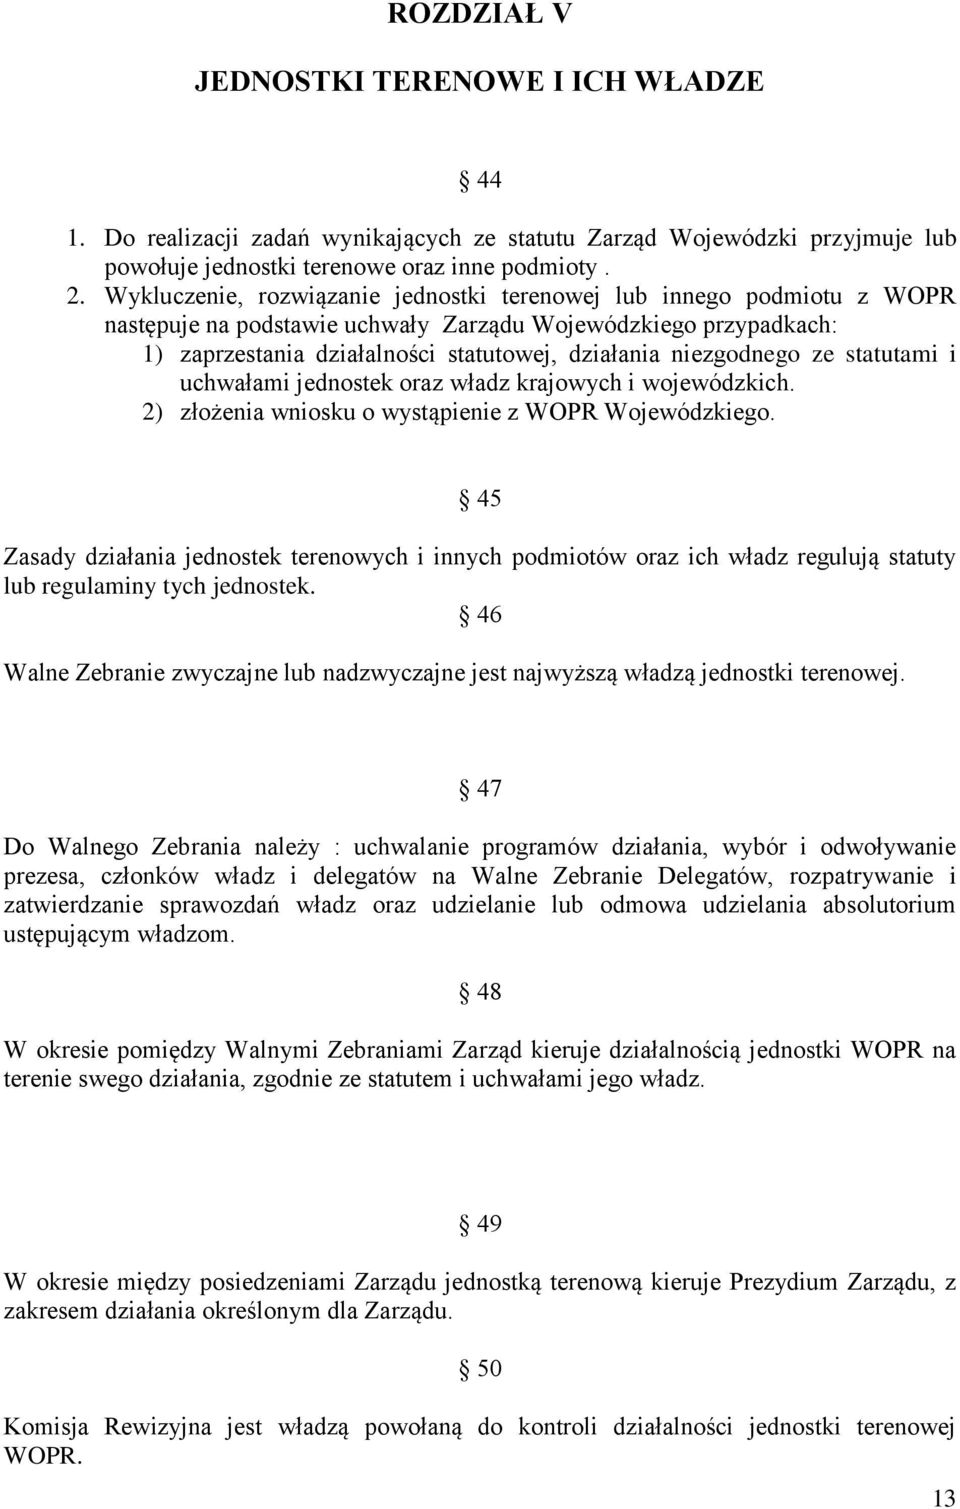 niezgodnego ze statutami i uchwałami jednostek oraz władz krajowych i wojewódzkich. 2) złożenia wniosku o wystąpienie z WOPR Wojewódzkiego.